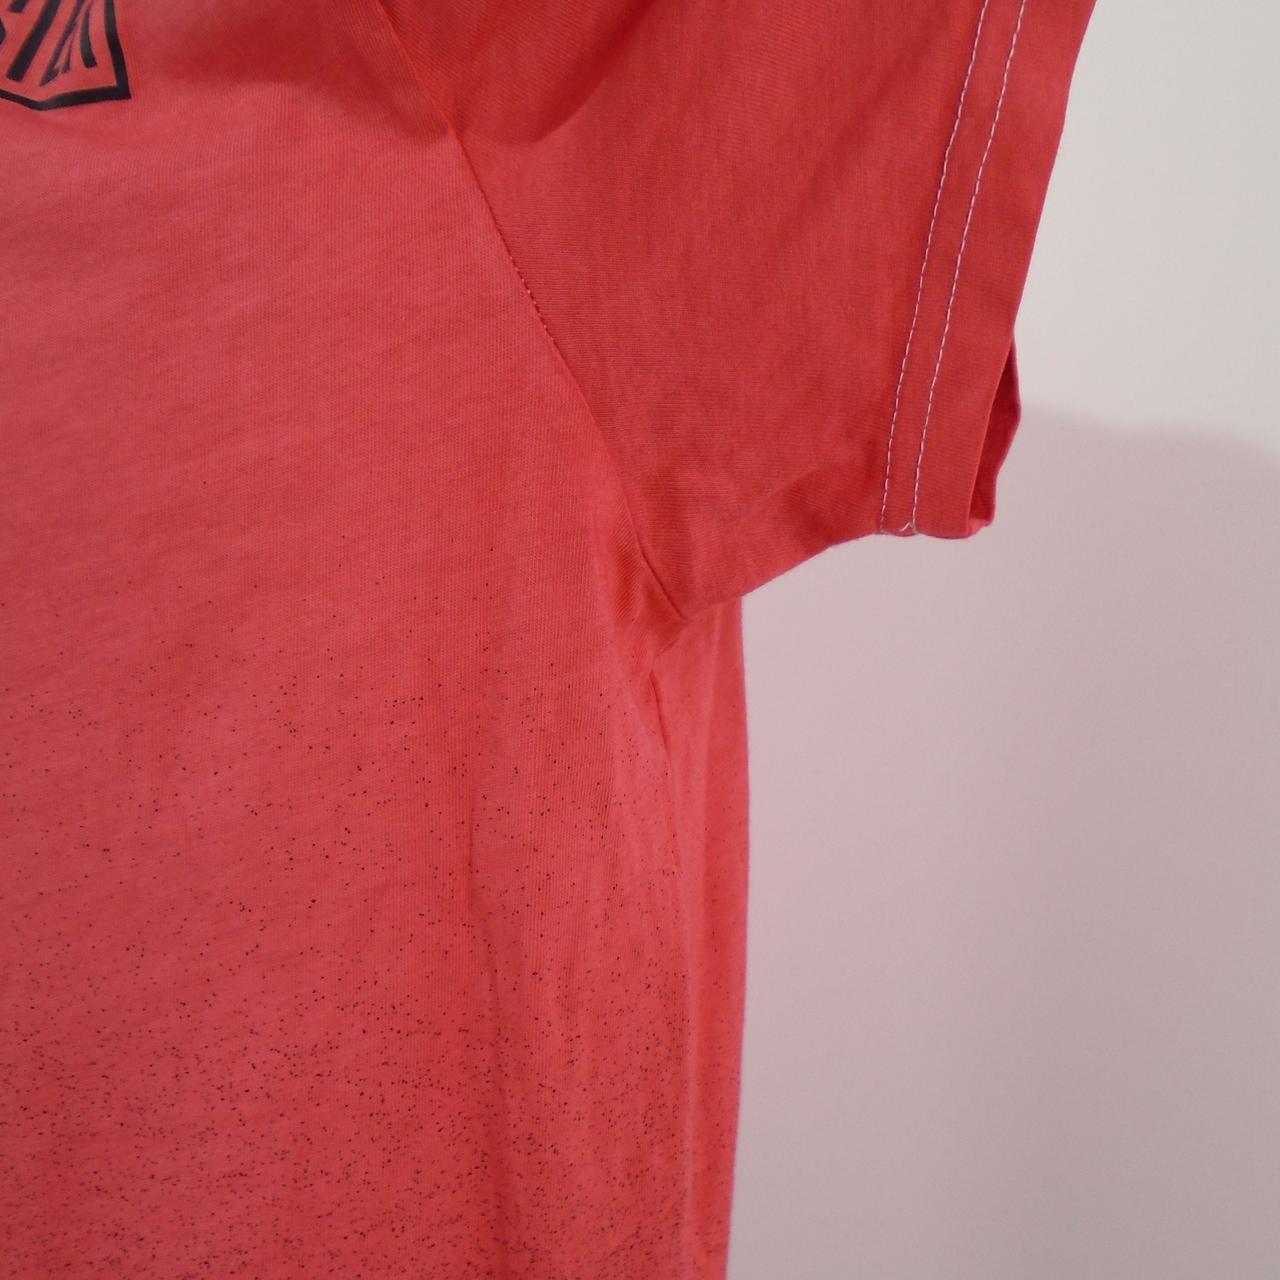 Camiseta de hombre Hollister.  Rojo.  M.Usado.  Bien